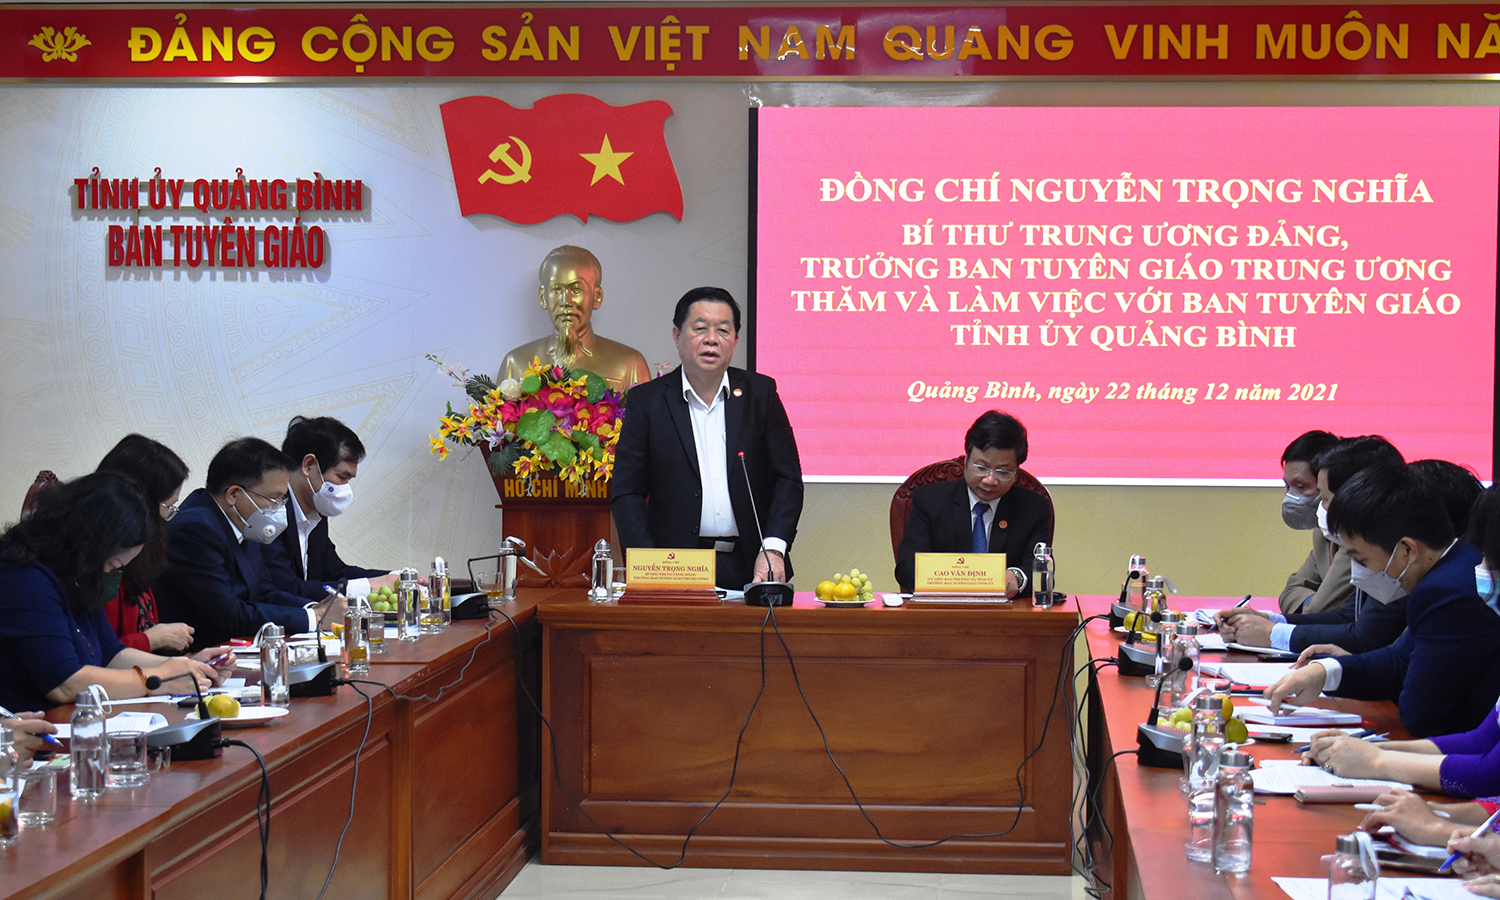 Đồng chí Trưởng ban Tuyên giáo Trung ương thăm, làm việc với Ban Tuyên giáo Tỉnh ủy Quảng Bình